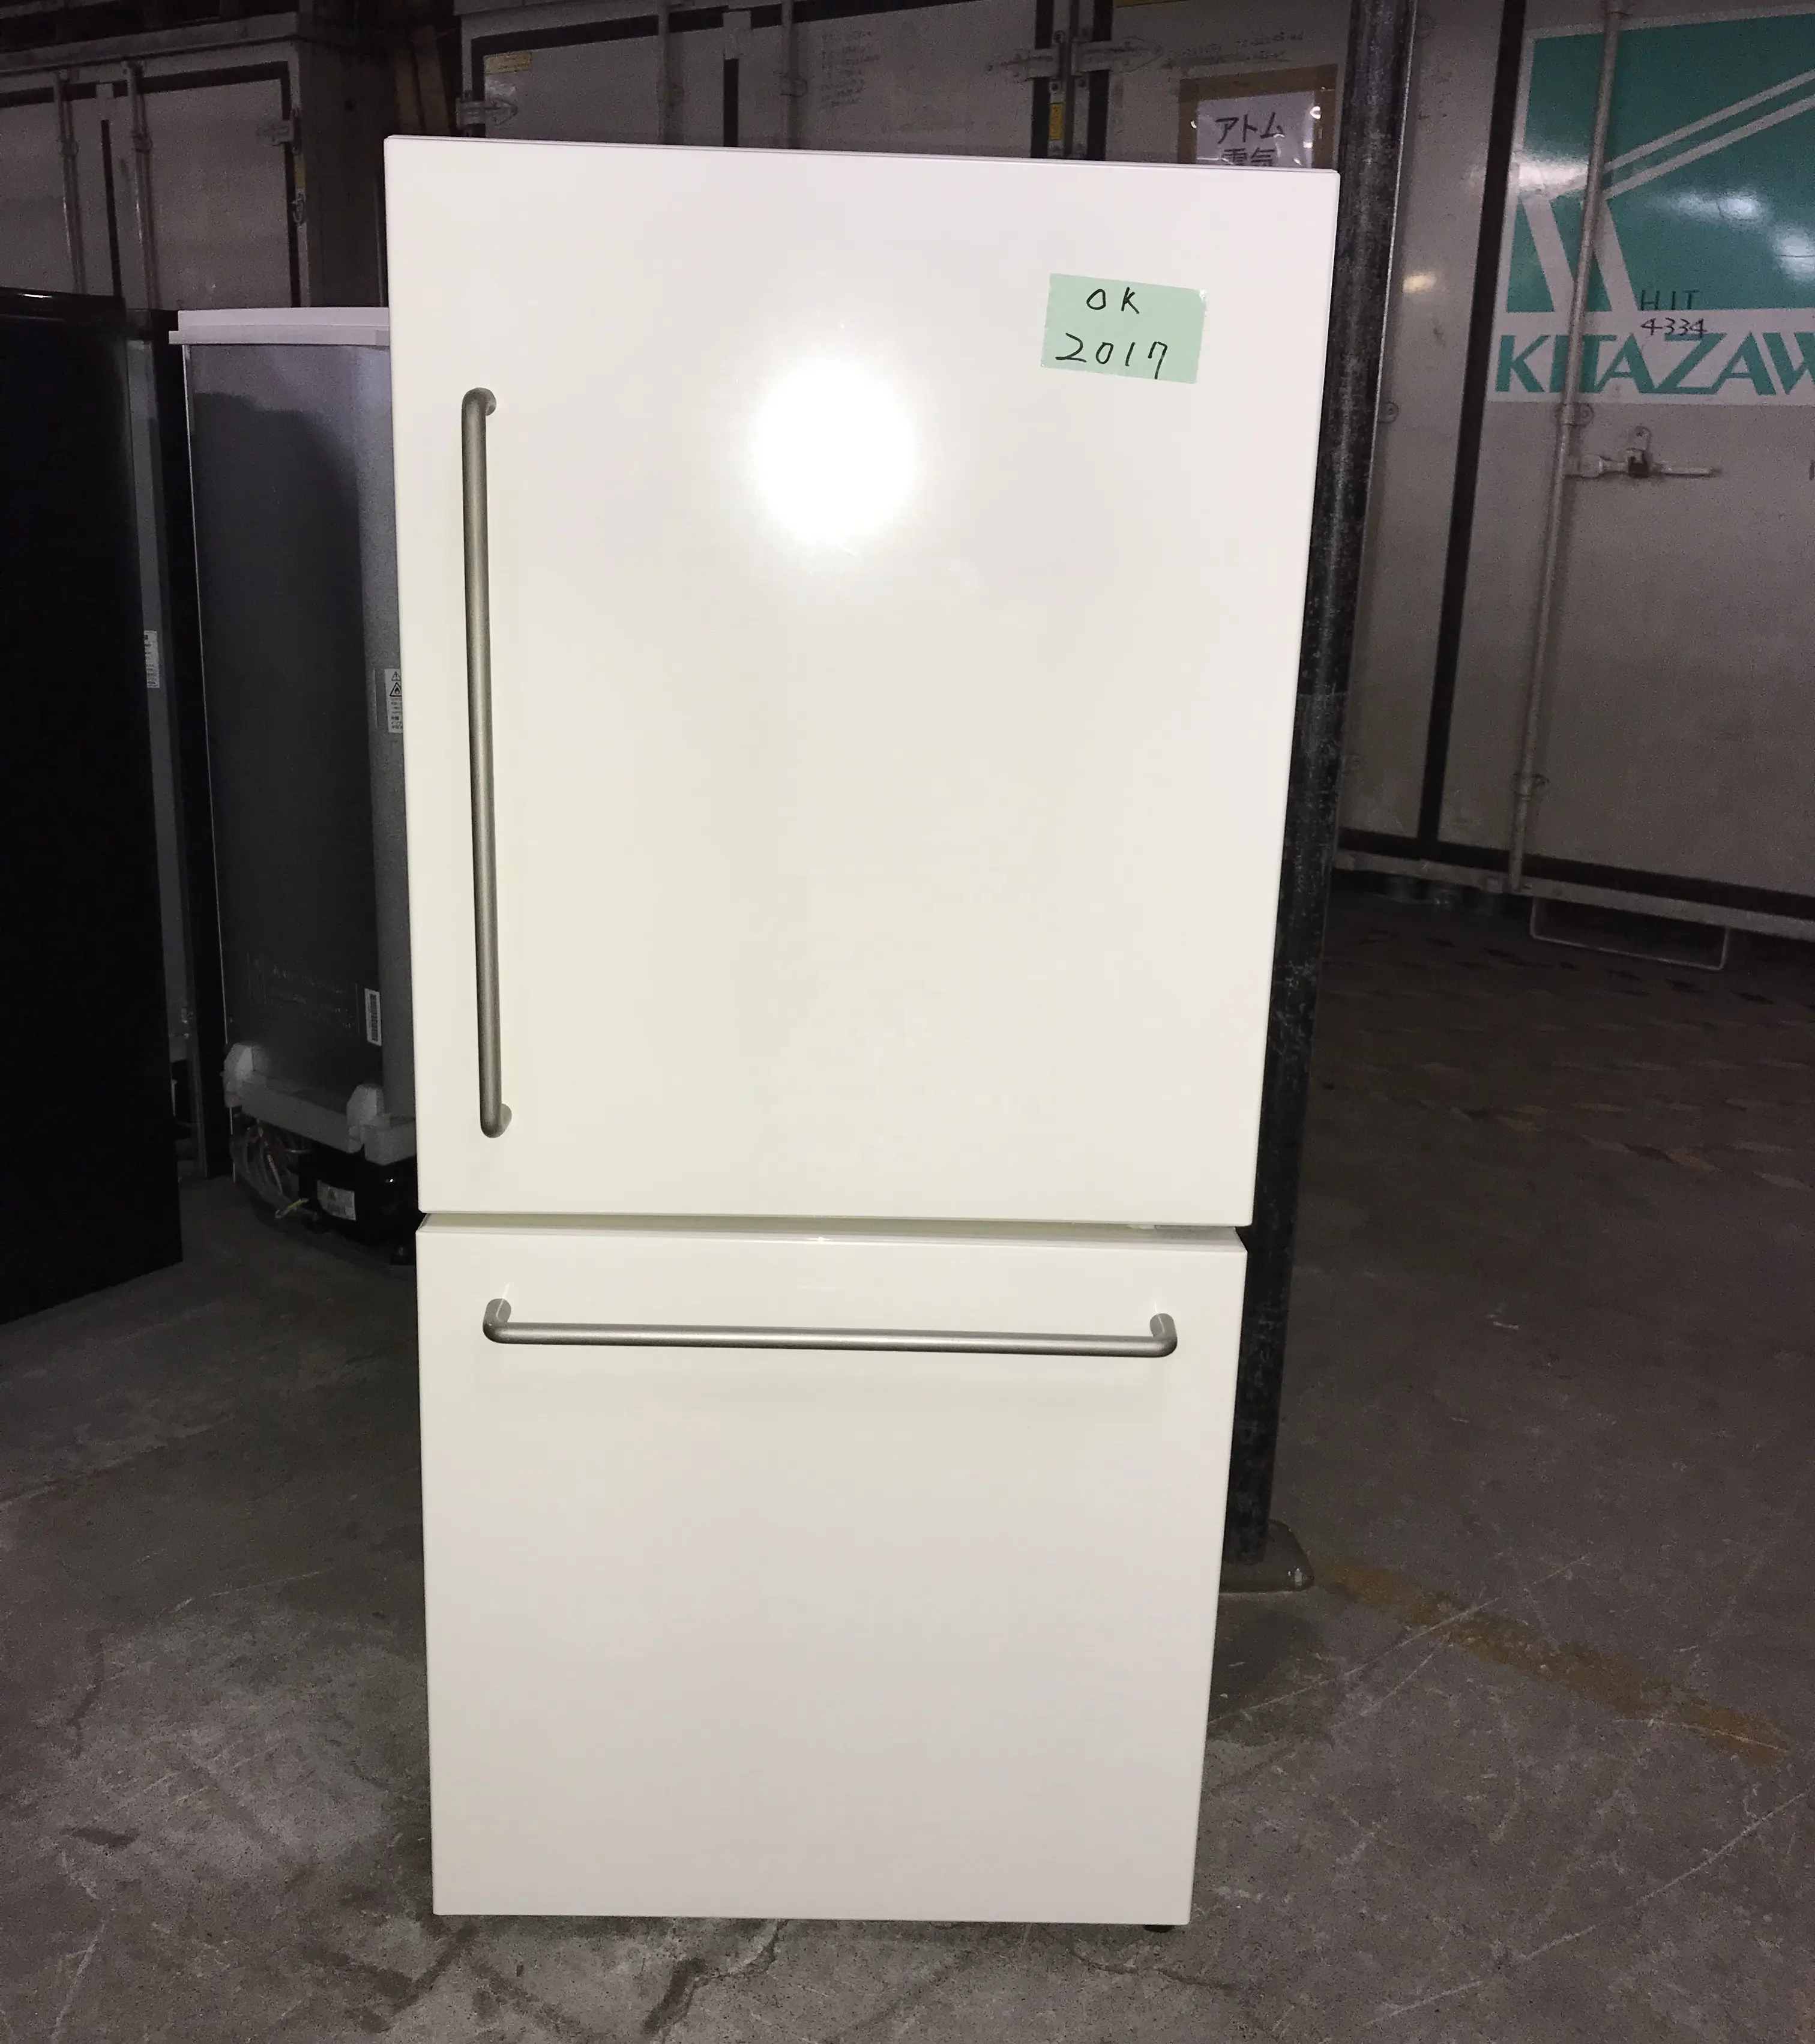 Mükemmel kalite japonya kullanılan çift kapılı buzdolabı satılık